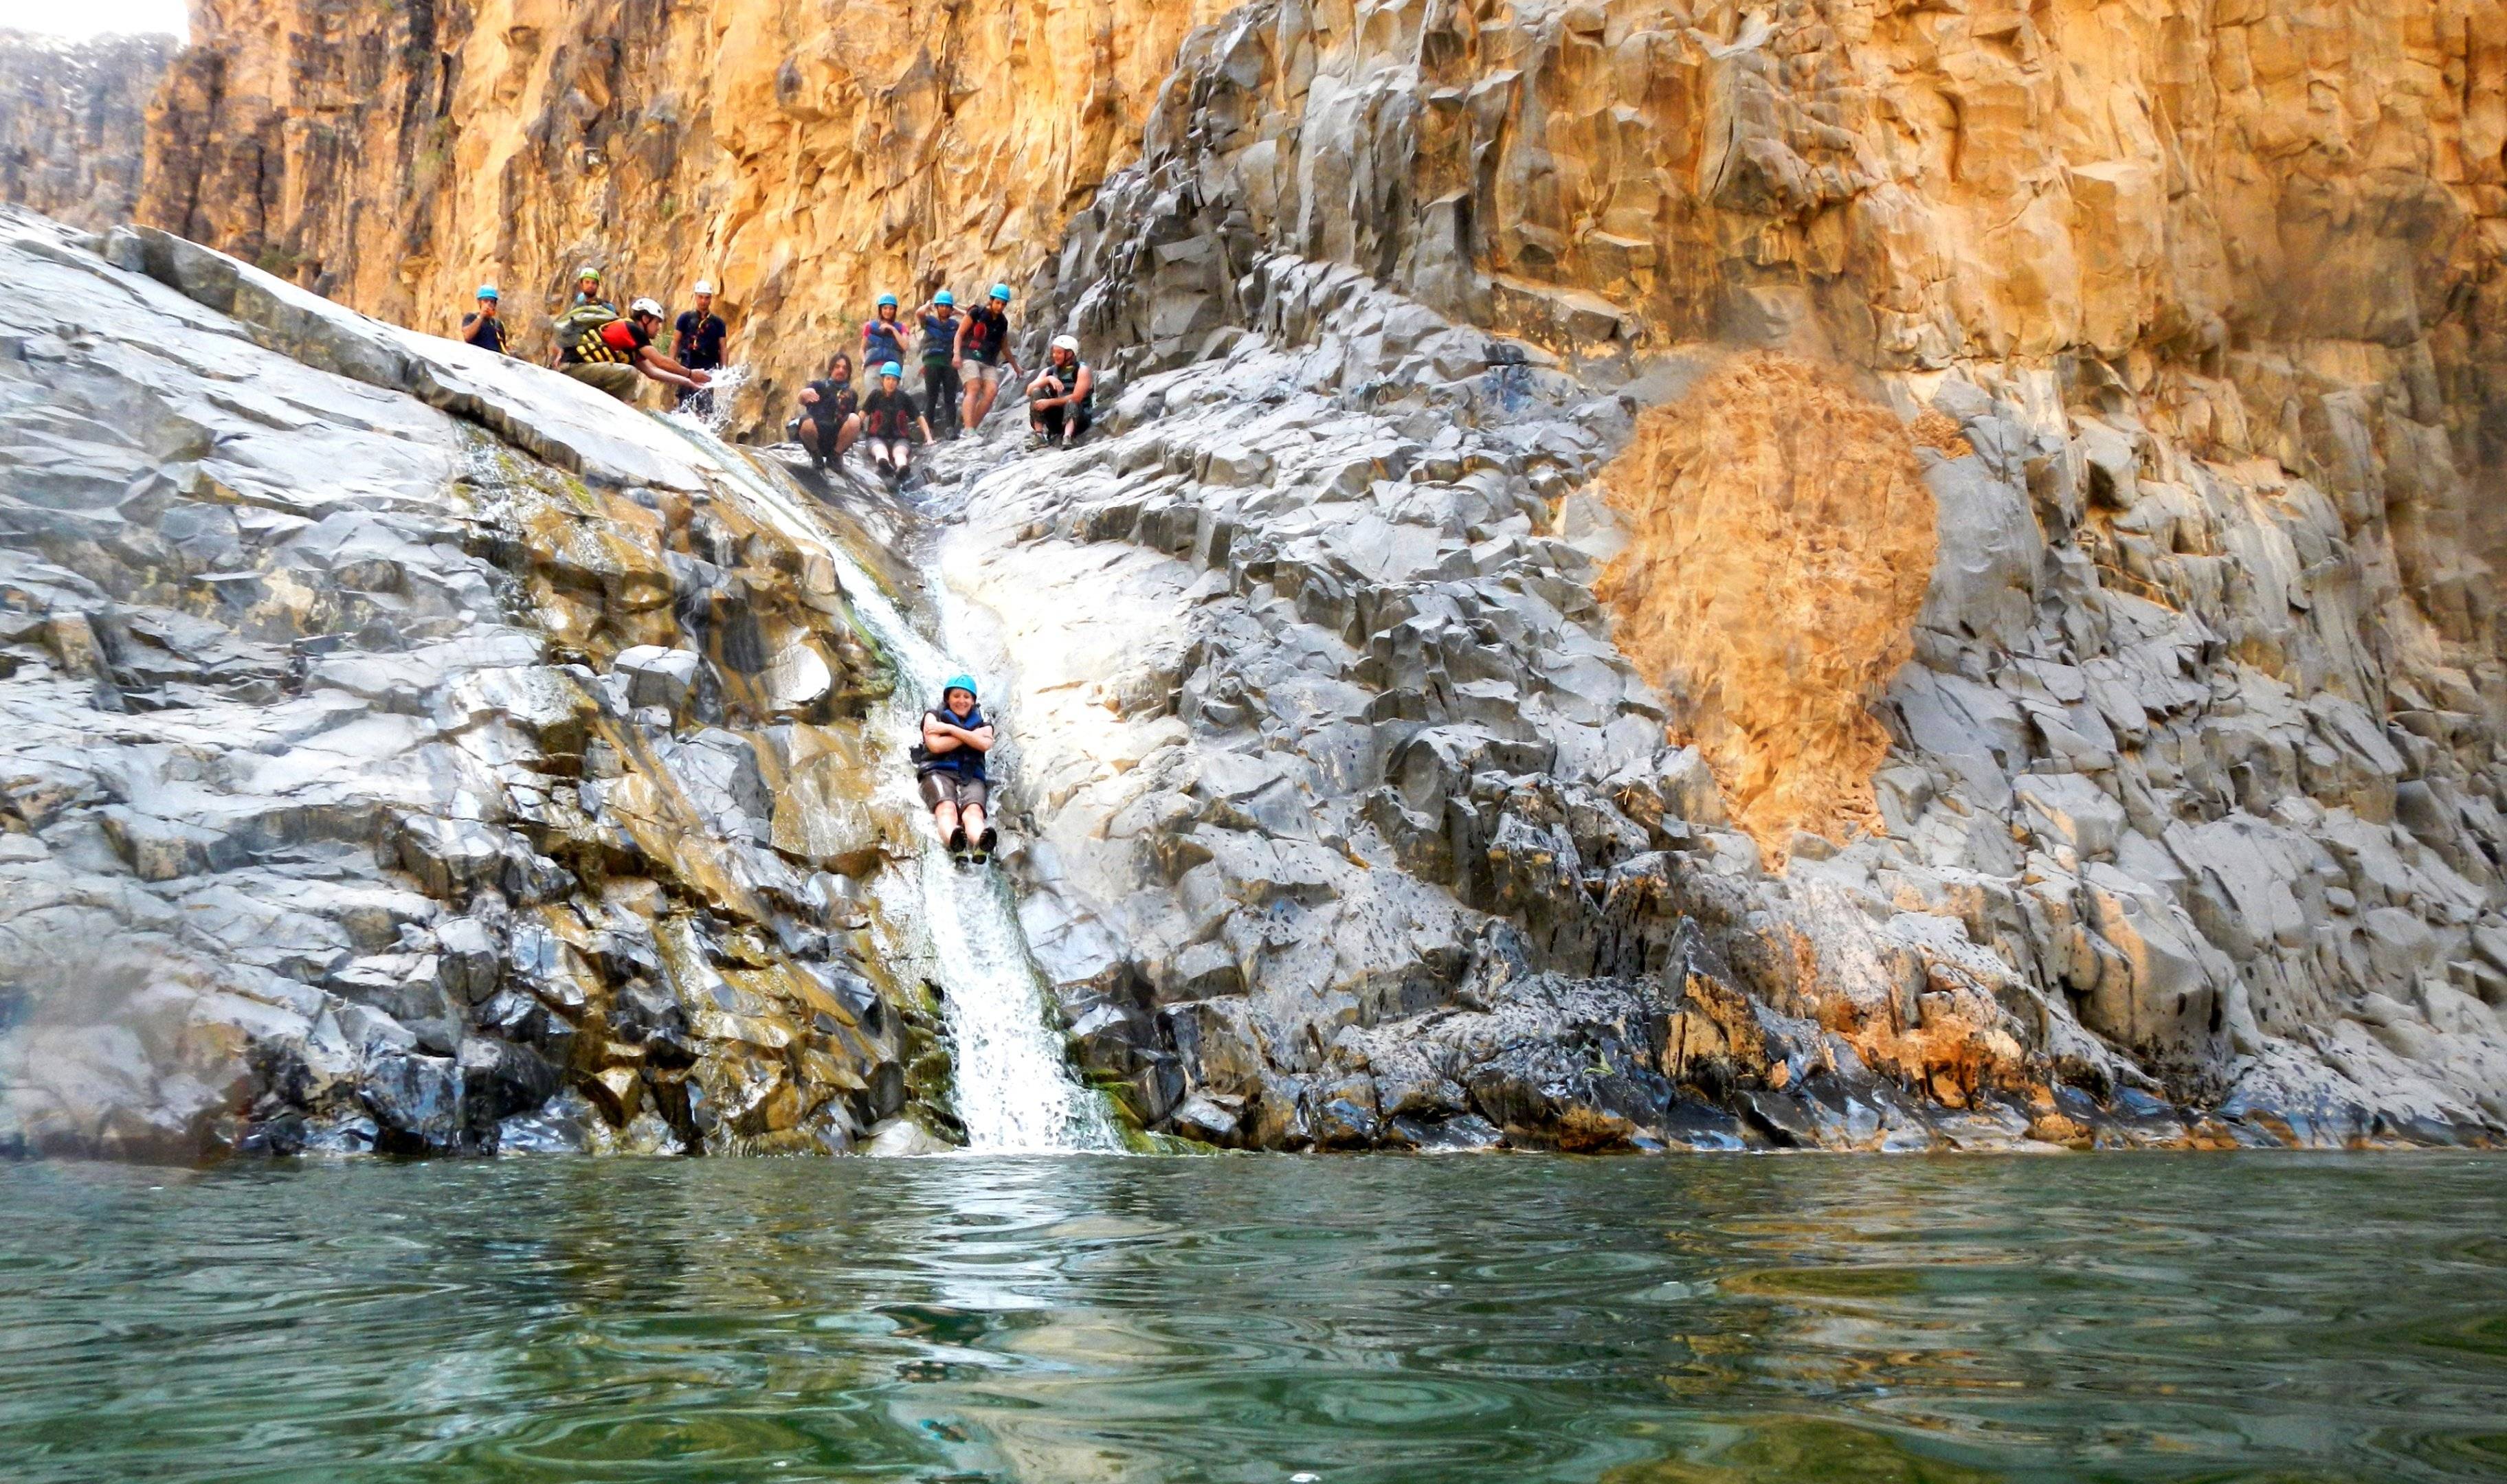 Natura e adrenalina: alla scoperta dei canyon e dei deserti rocciosi